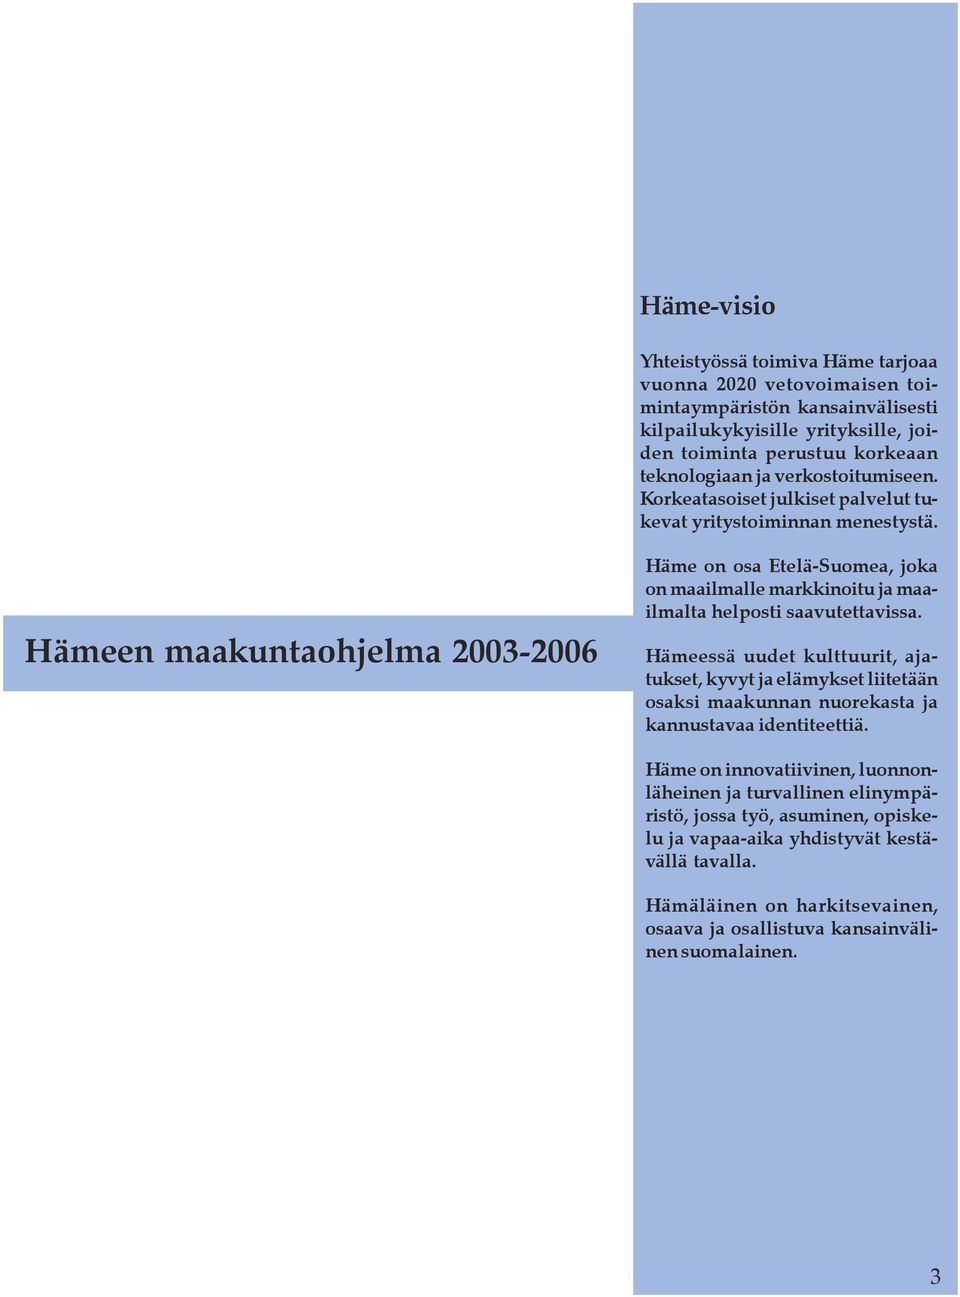 Hämeen maakuntaohjelma 2003-2006 Häme on osa Etelä-Suomea, joka on maailmalle markkinoitu ja maailmalta helposti saavutettavissa.